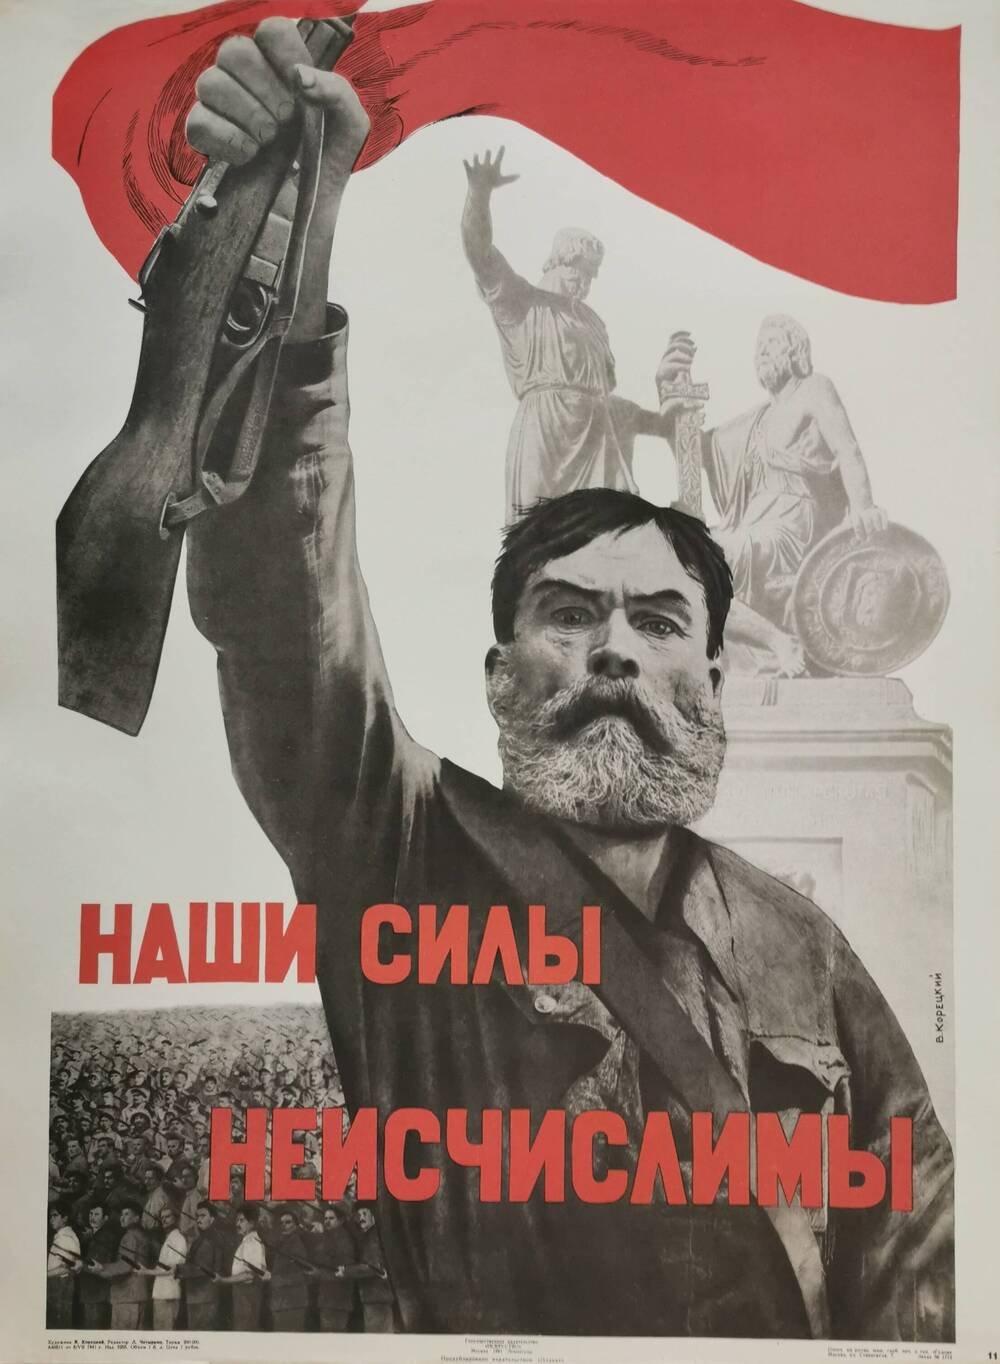 Плакат №11 «Наши силы неисчислимы!» из комплекта «Плакаты Великой Отечественной войны 1941-1945»